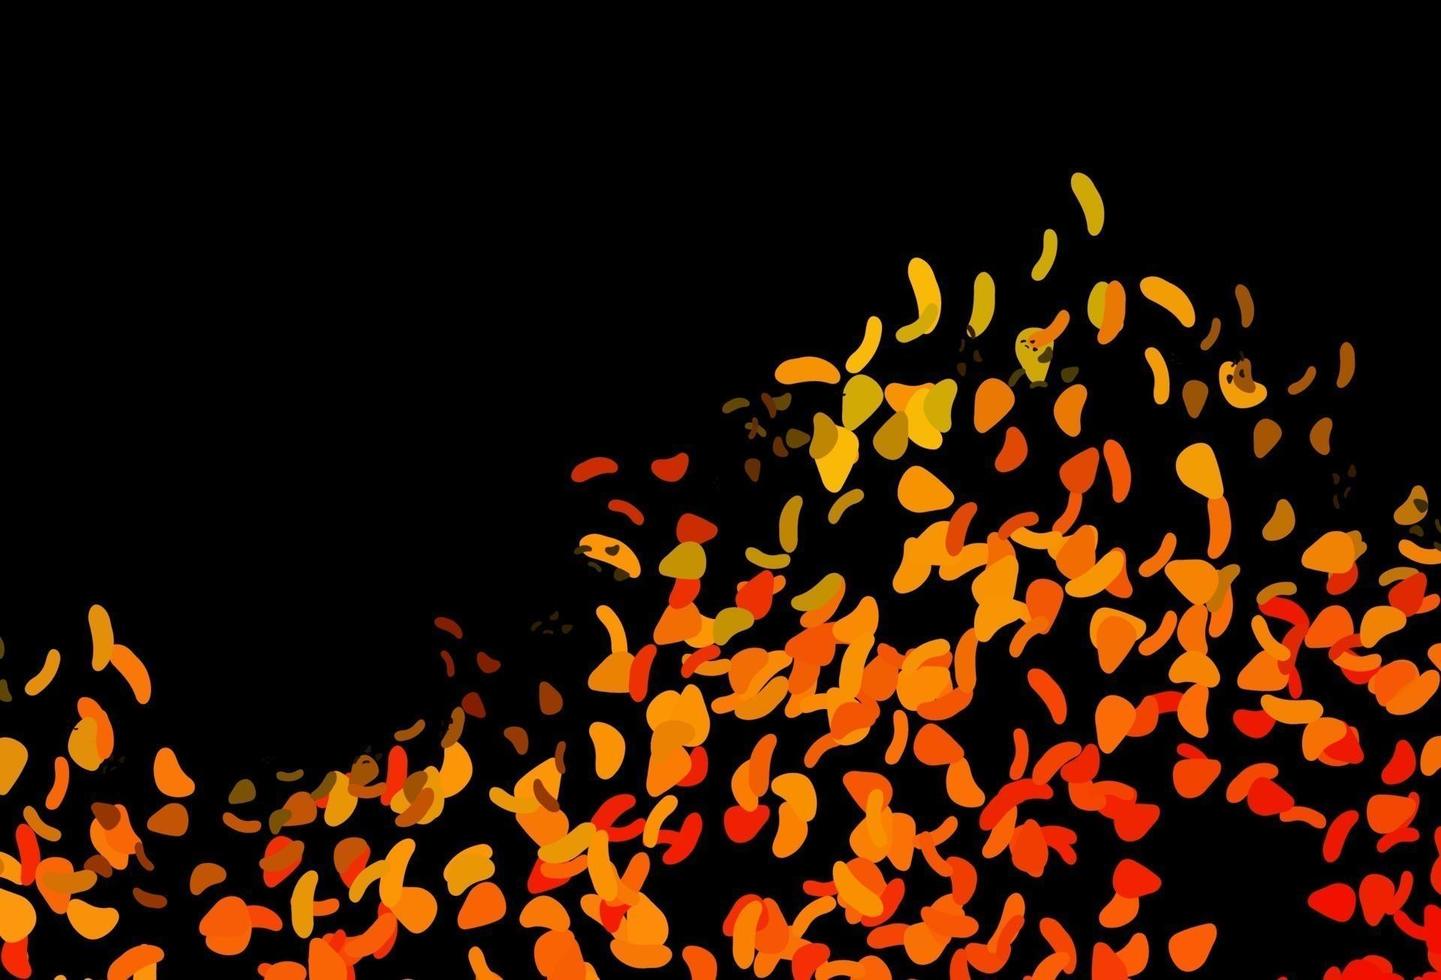 sfondo vettoriale arancione scuro con forme astratte.